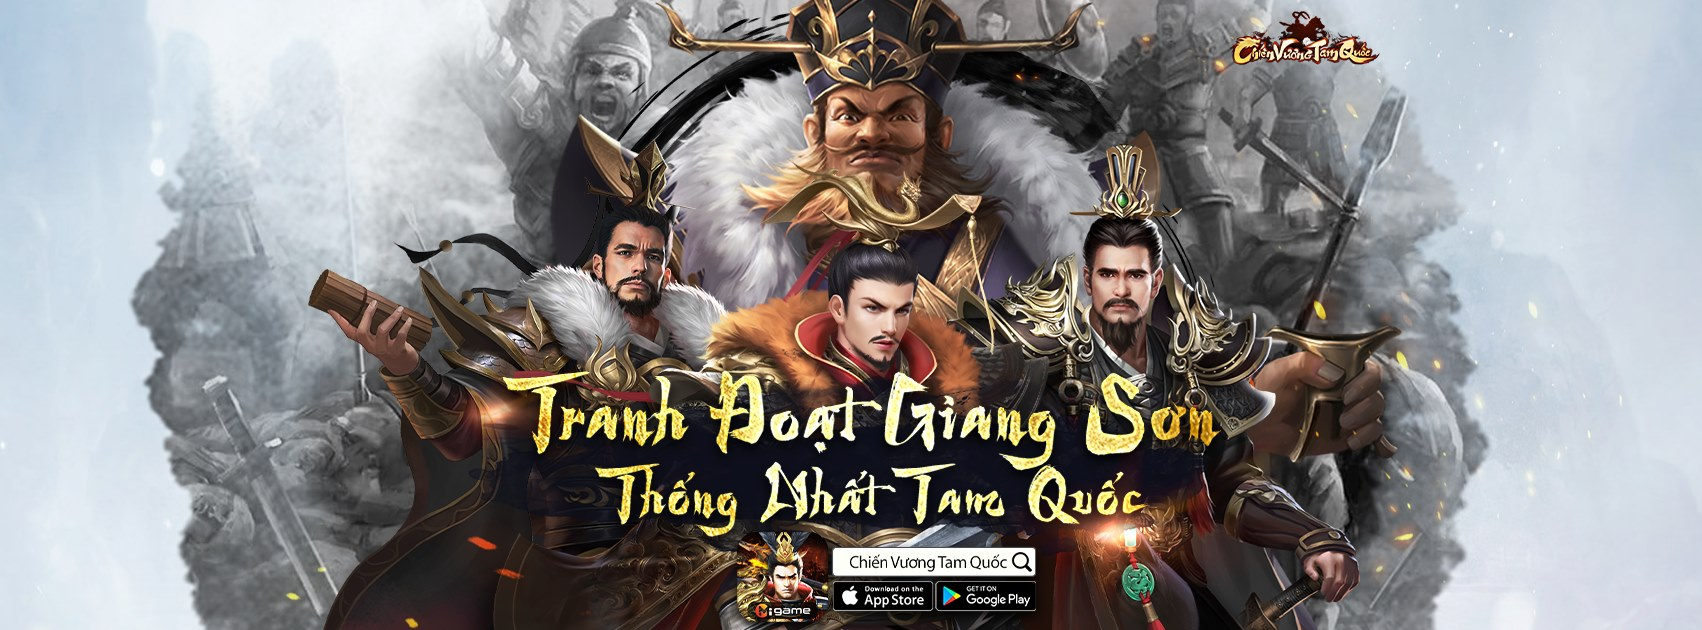 Bom tấn game SLG Chiến Vương Tam Quốc Mobile chính thức ra mắt game thủ Việt 2345